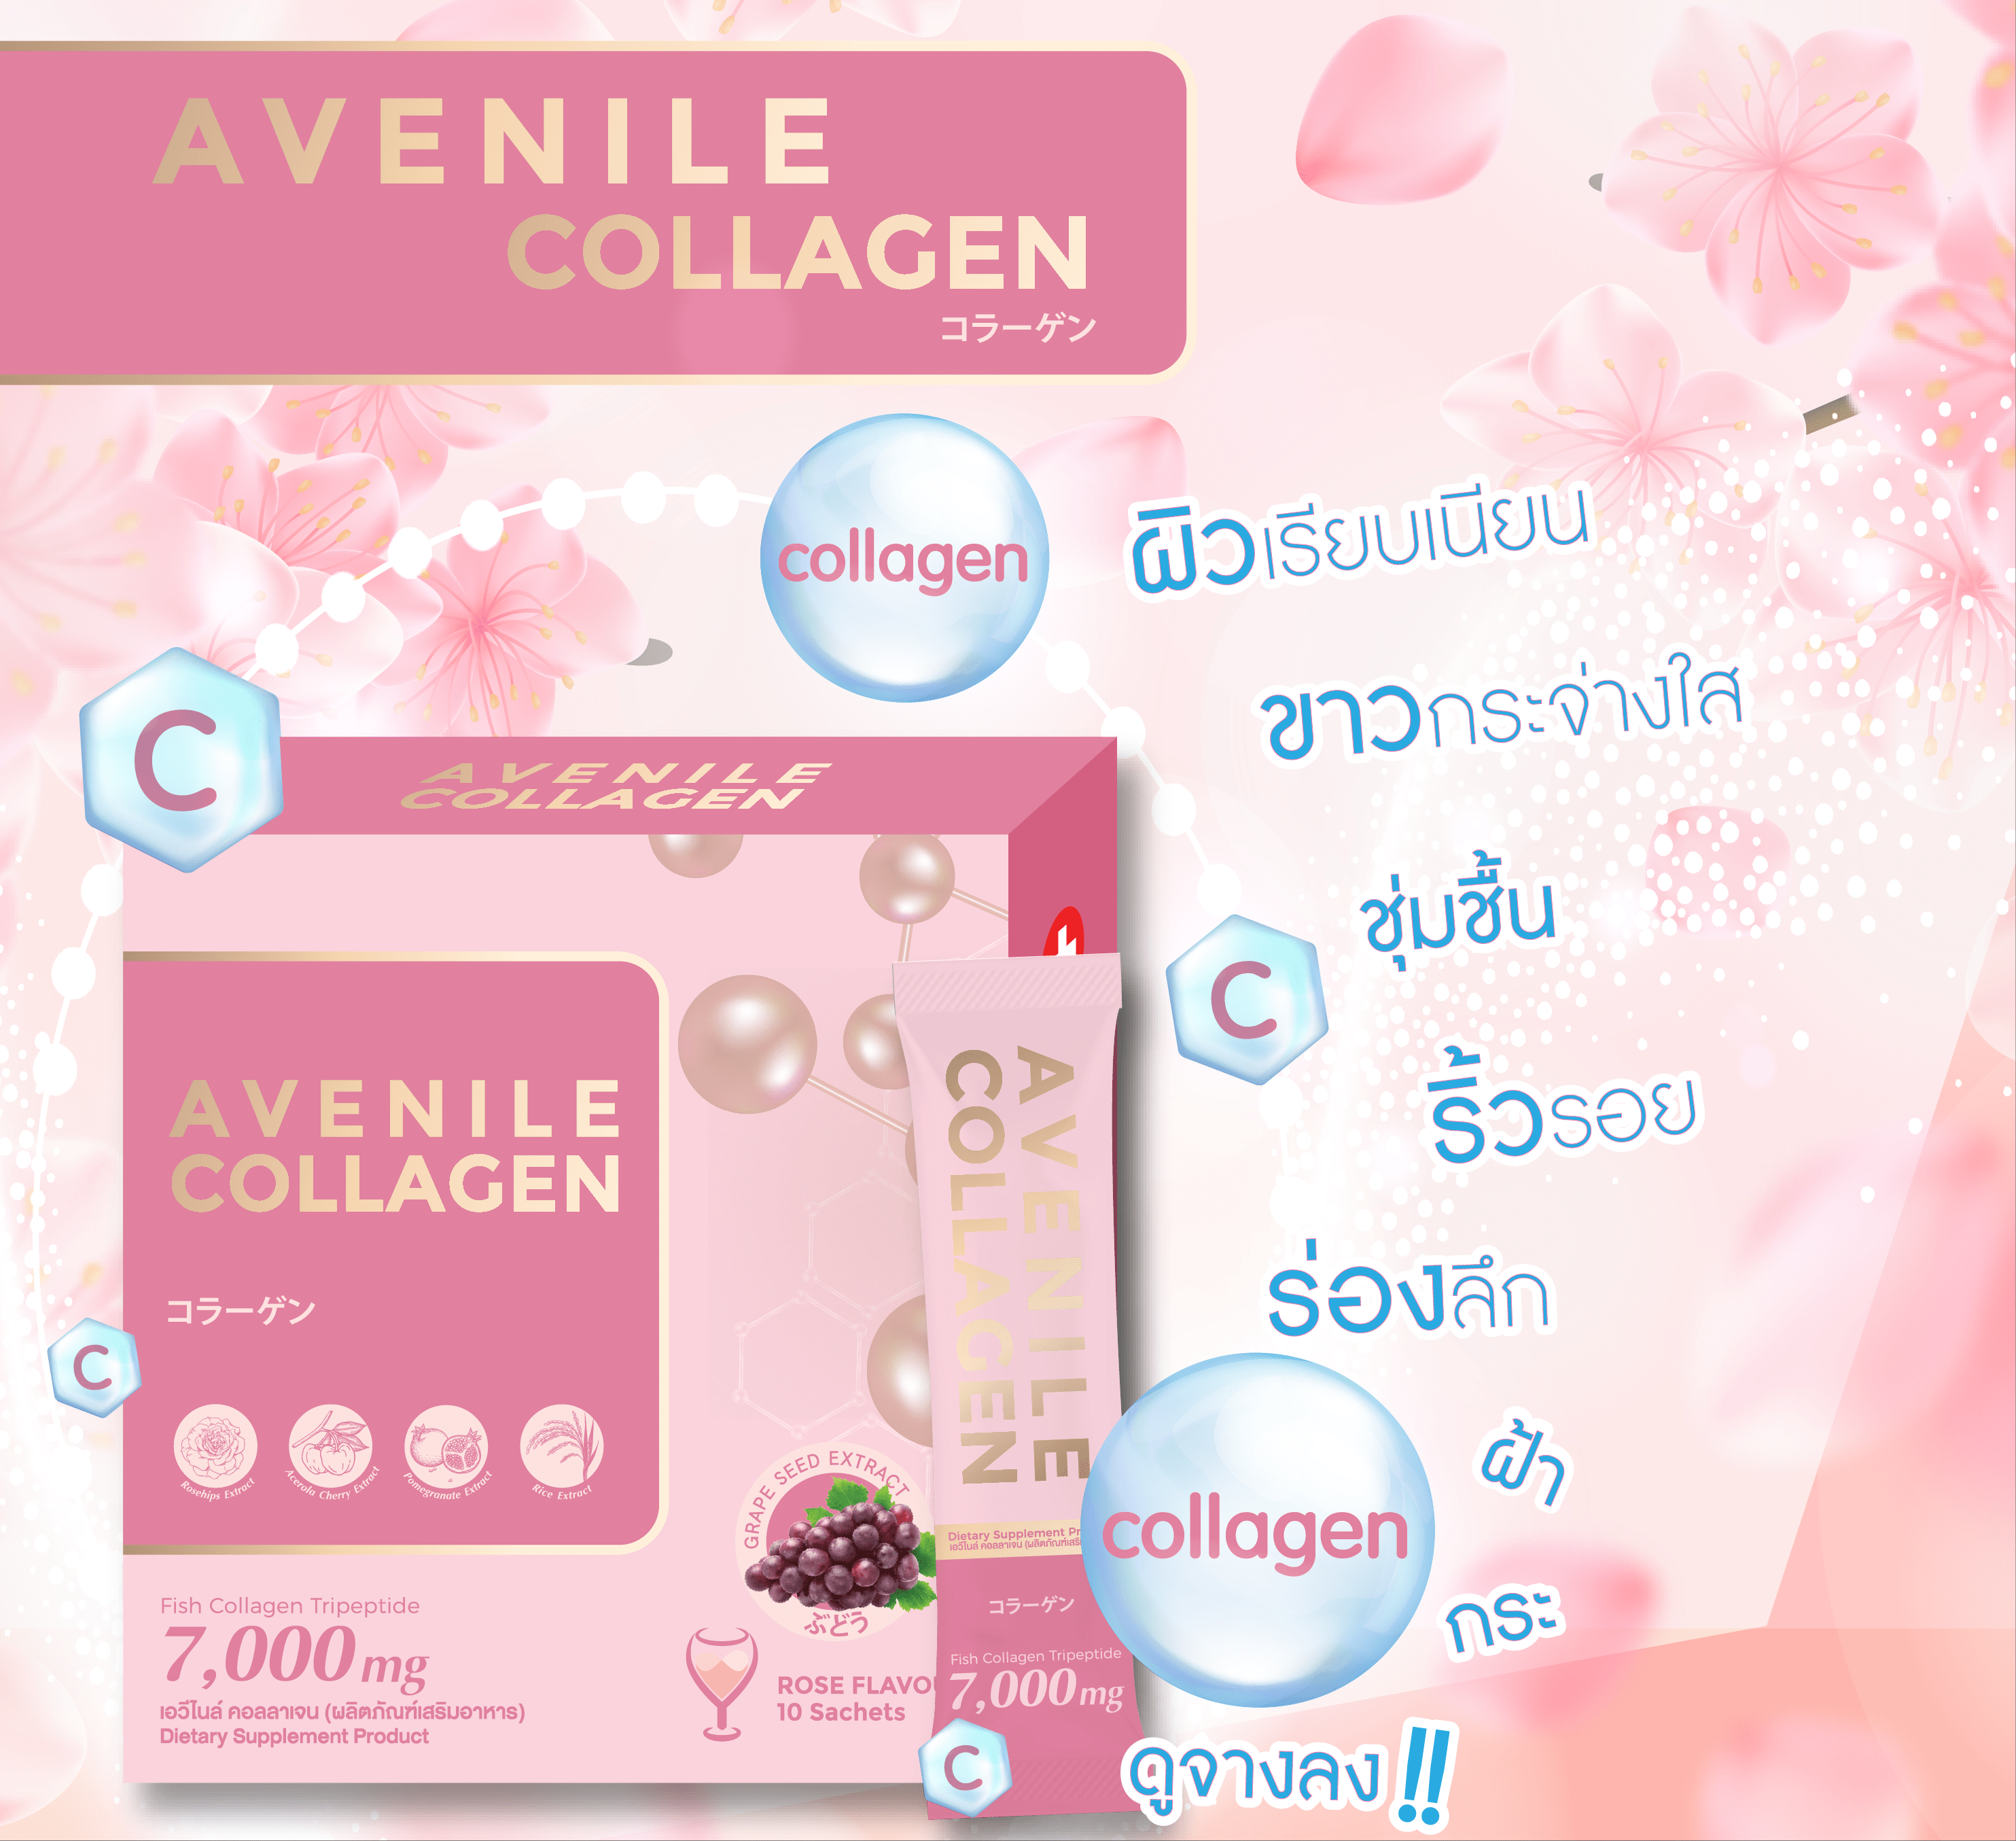 avenile-collagen เอวีไนล์ คอลลาเจน